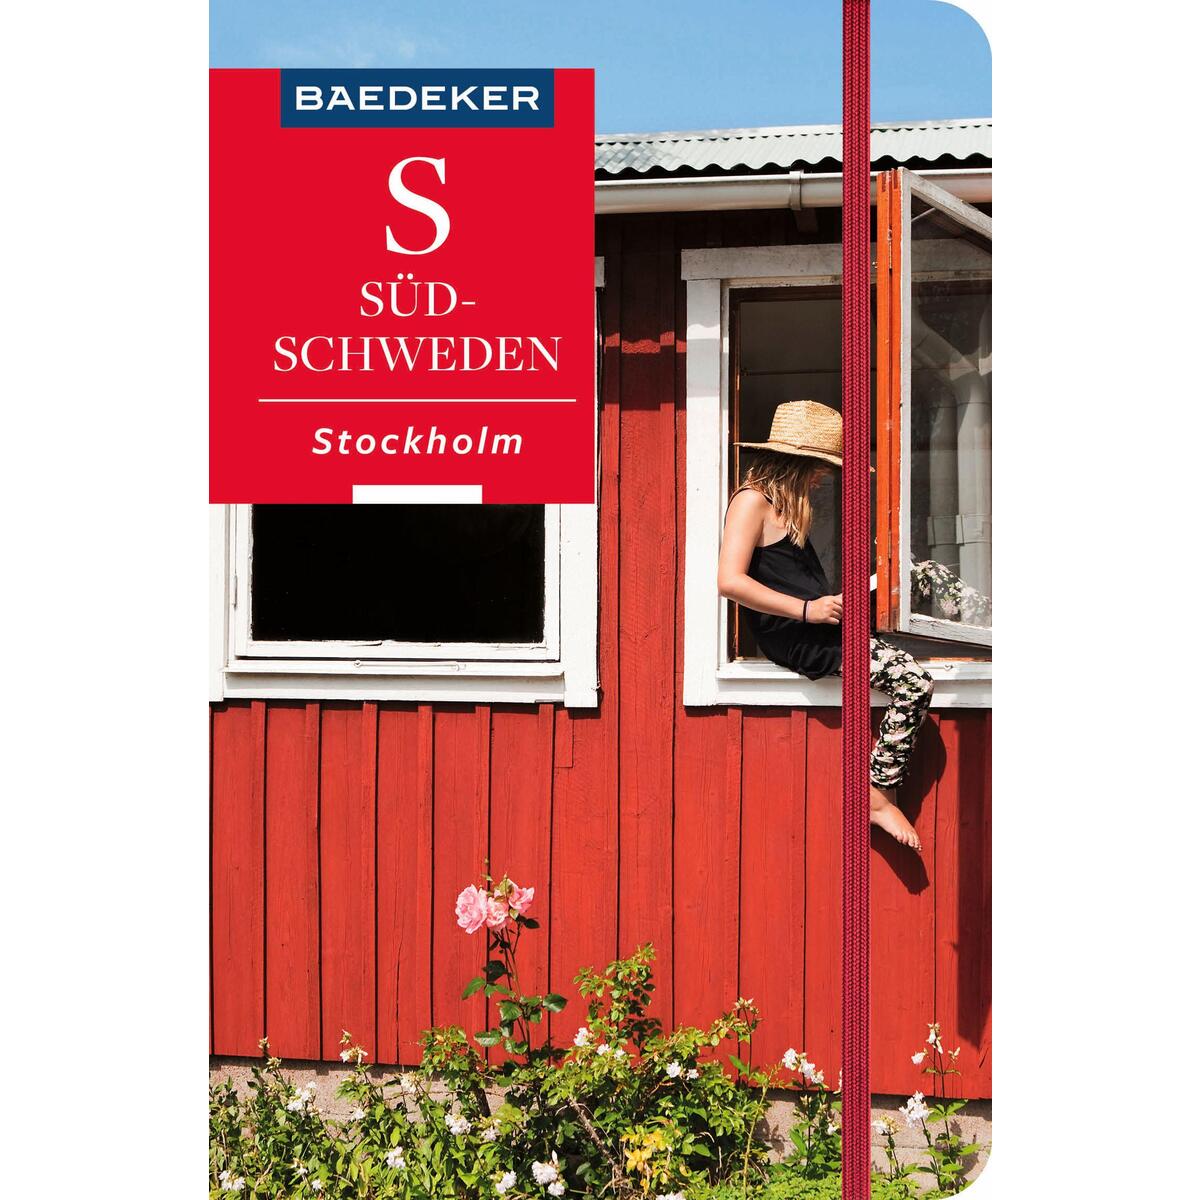 Baedeker Reiseführer Südschweden, Stockholm von Mairdumont